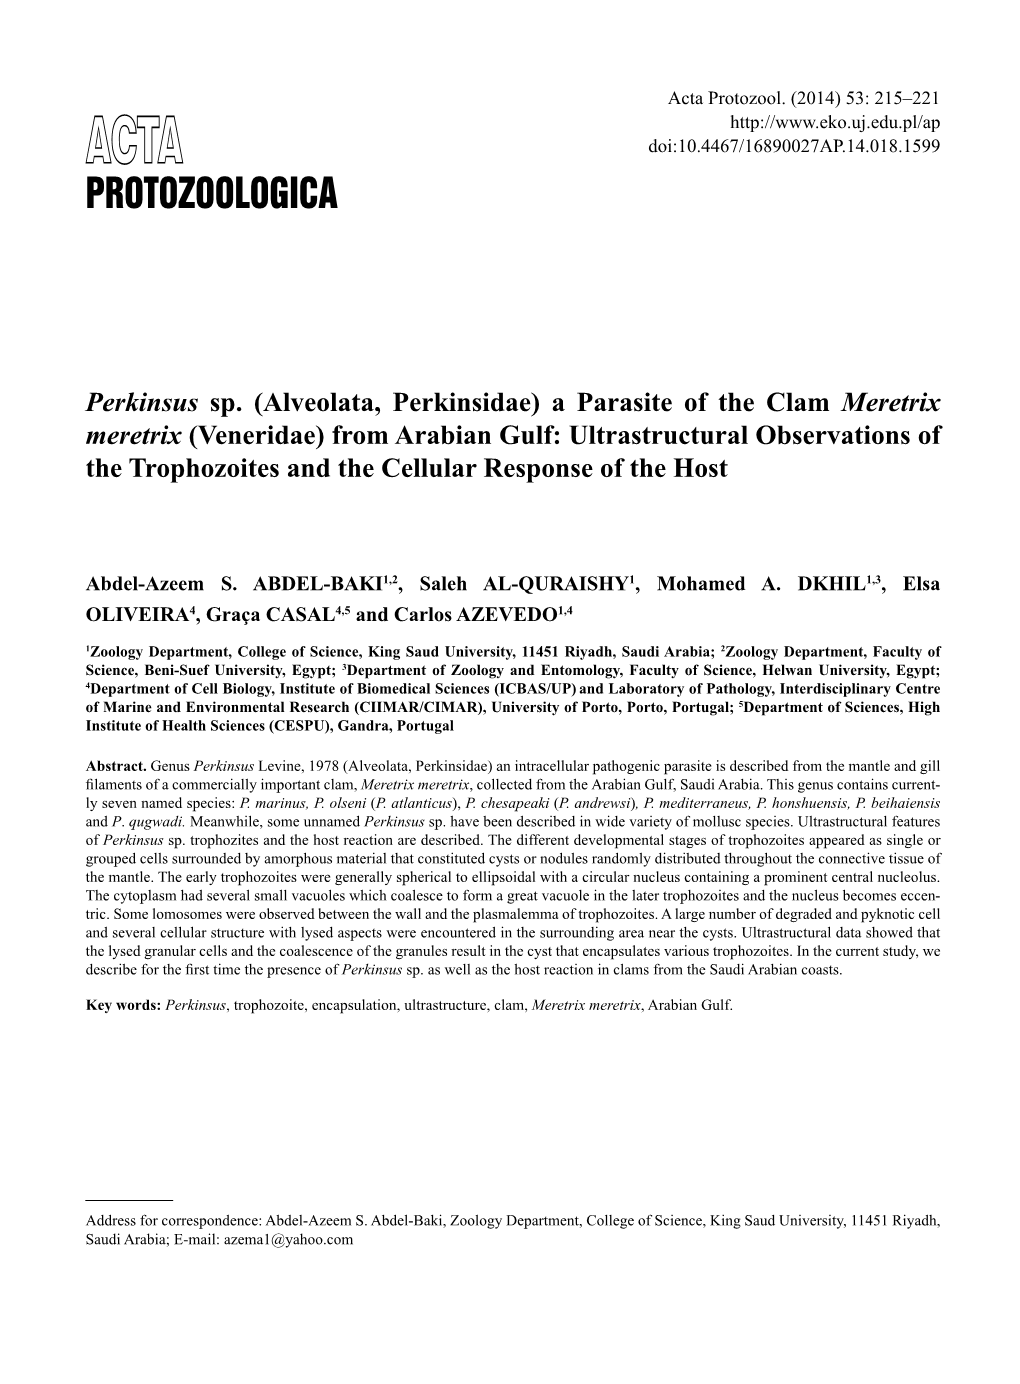 Perkinsus Sp.(Alveolata, Perkinsidae) a Parasite of the Clam Meretrix